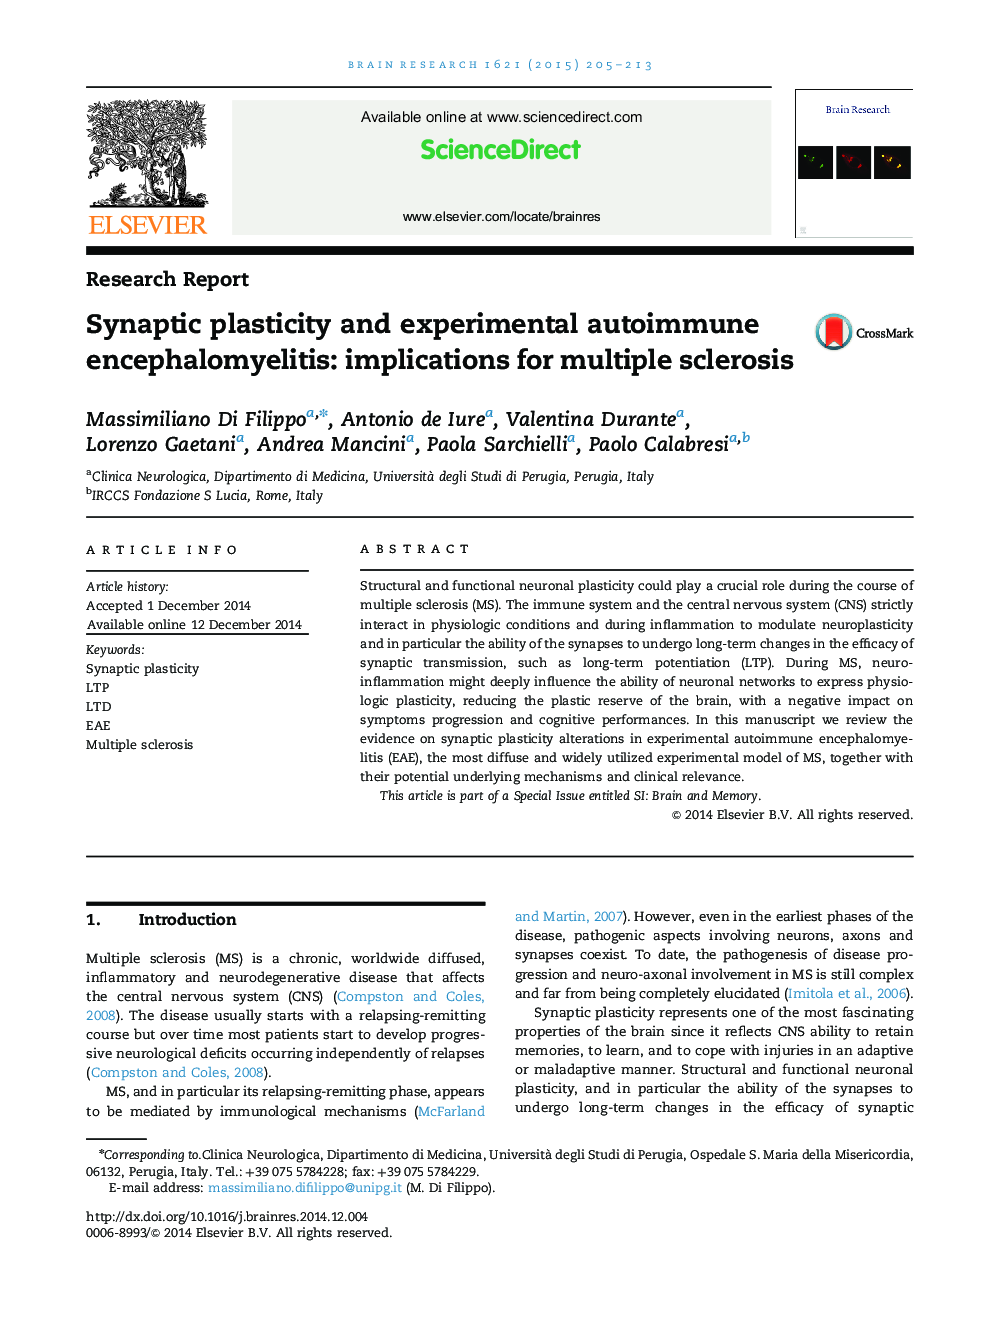 گزارش تحقیقاتی پلاستیک سیناپتیک و آنسفالومیبال ایمونوسیتی تجربی: پیامدهای برای مولتیپل اسکلروزیس 